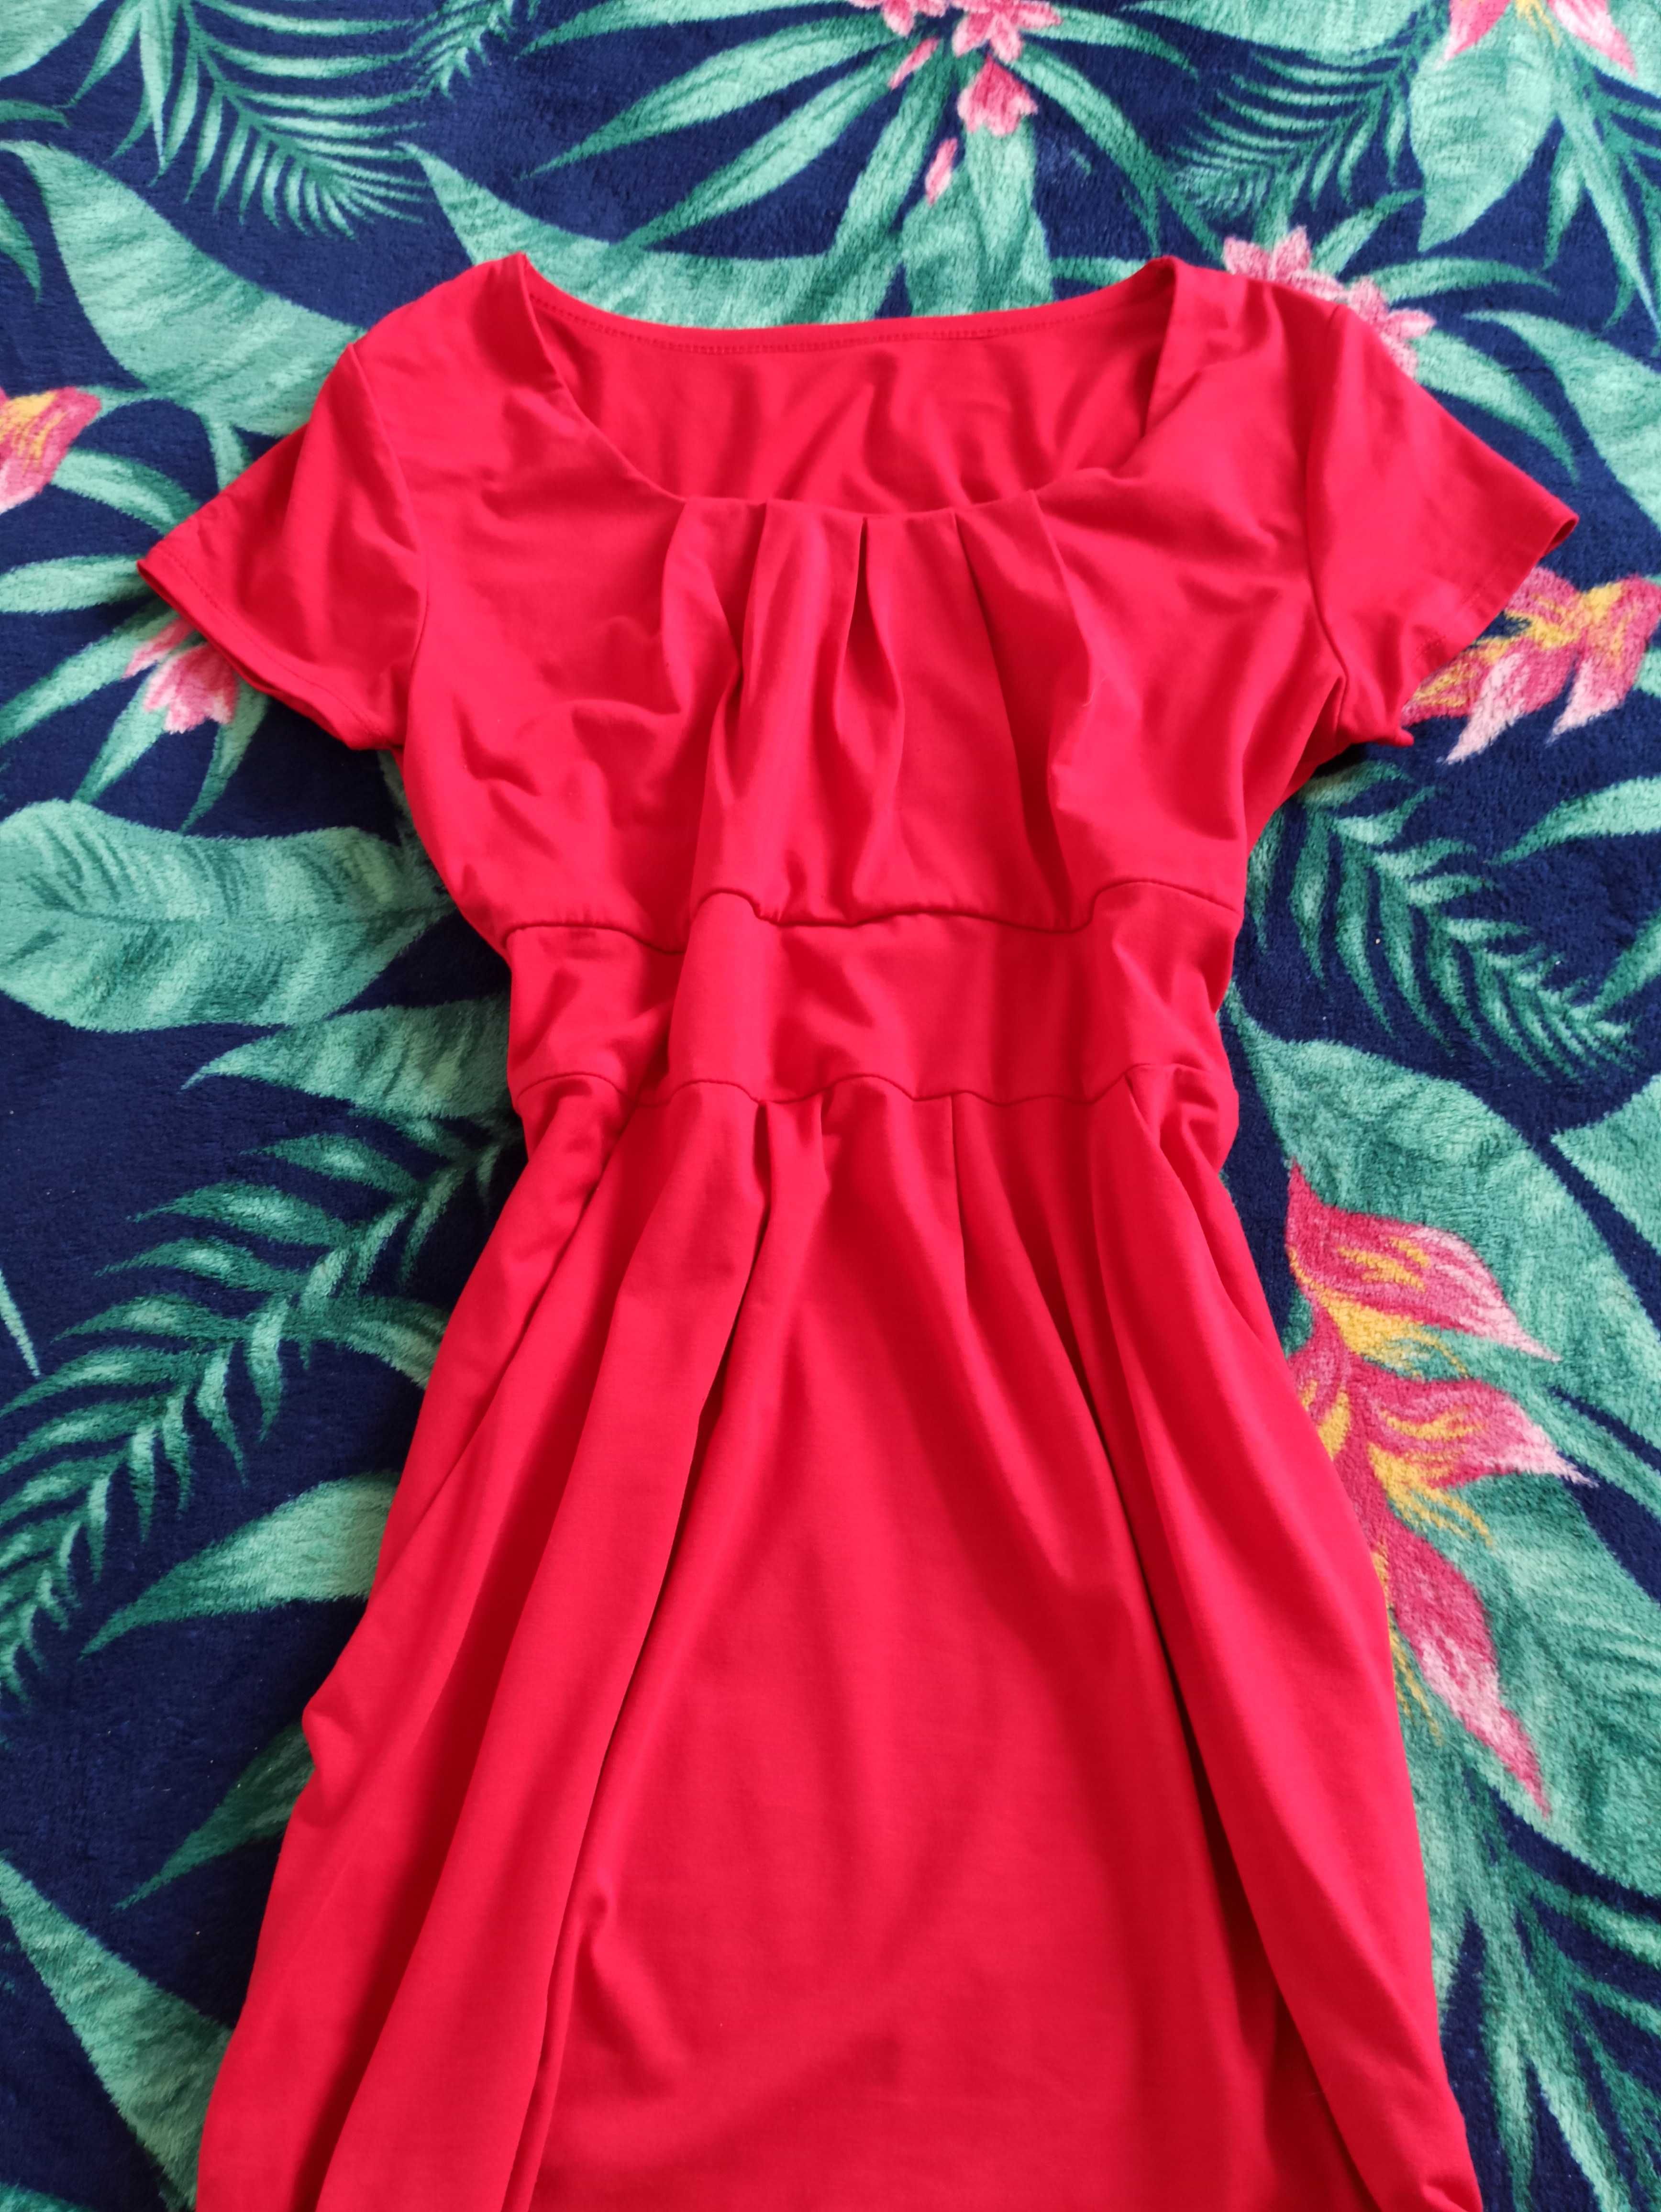 Sukienka czerwona kobieca S M L - Kup 3, zapłać za 2 rzeczy